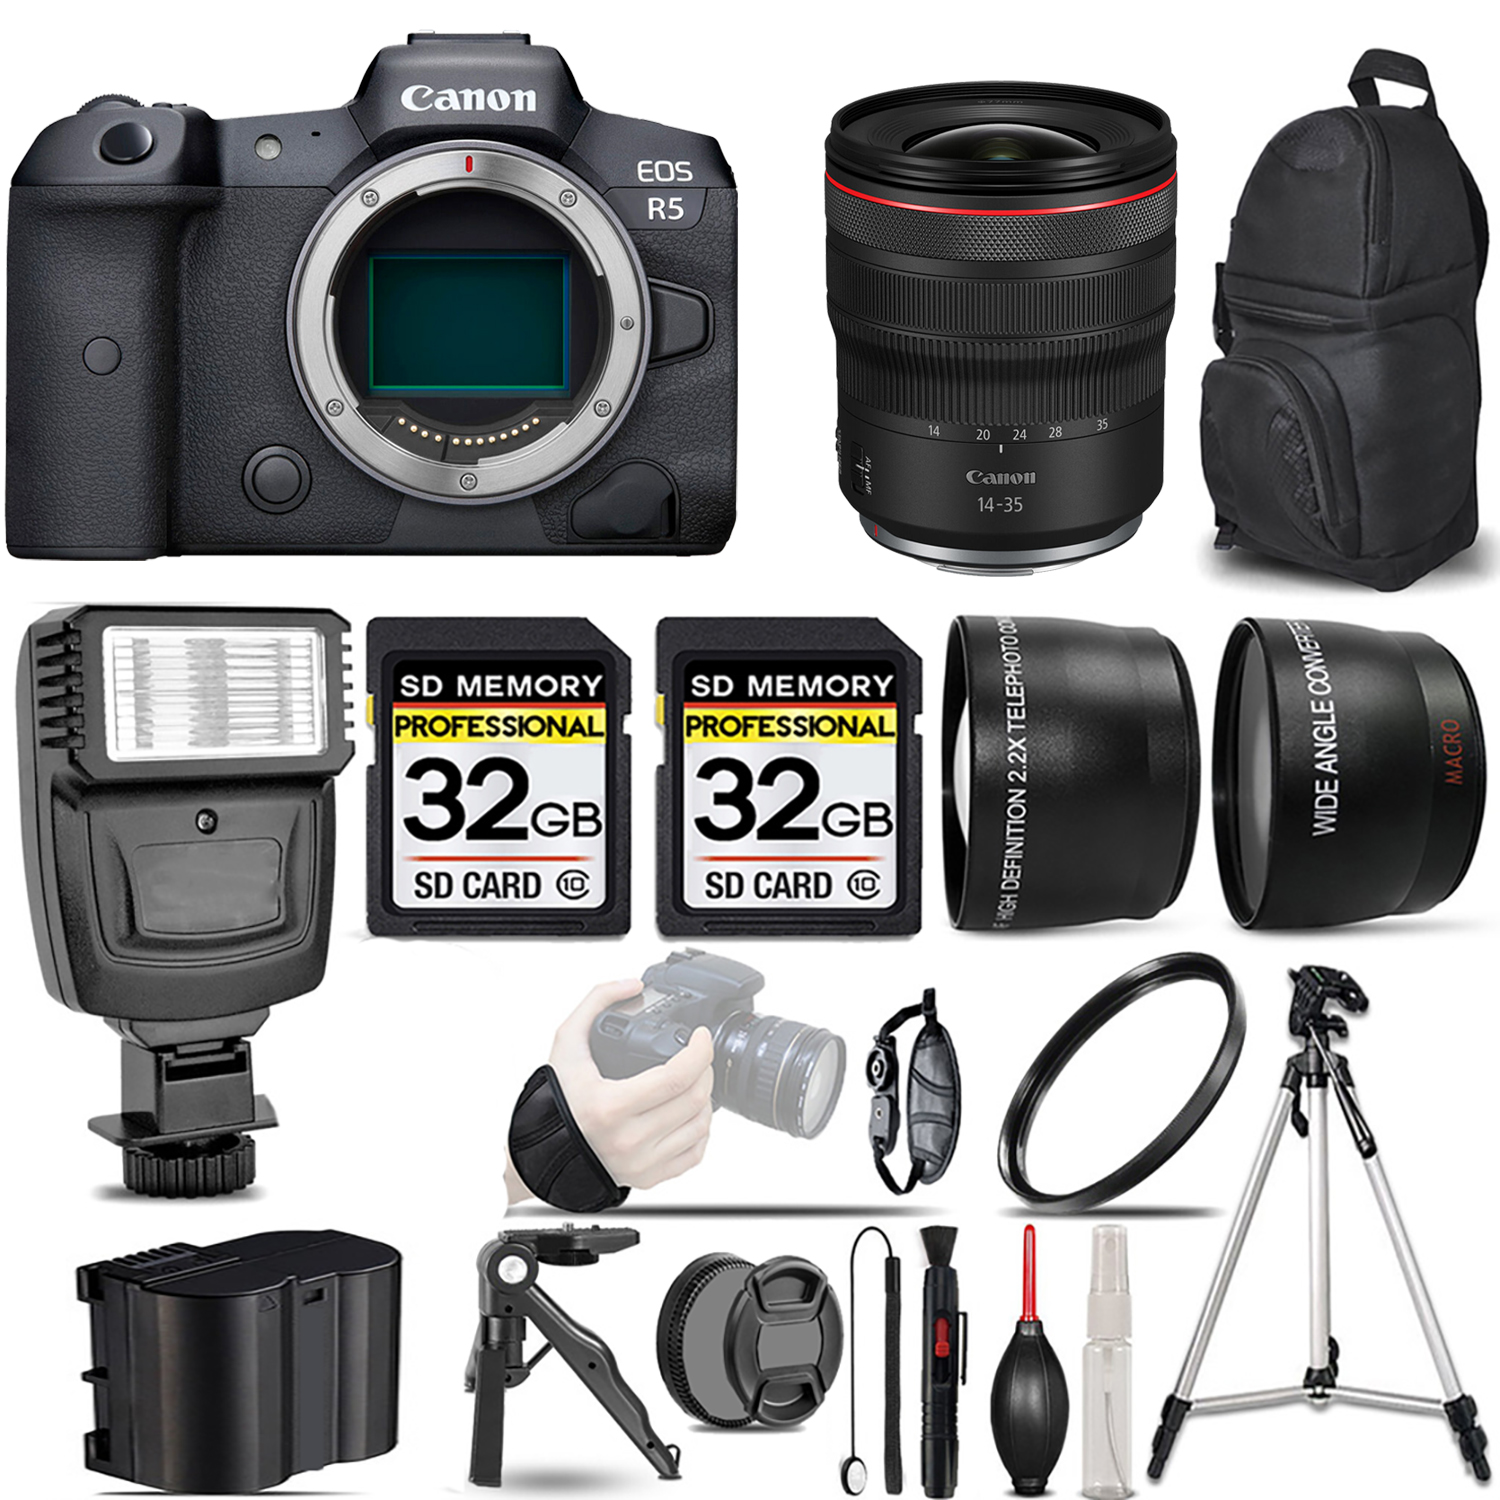 EOS R5 Mirrorless Camera + 14- 35mm f/4 L IS USM Lens + Flash + 64GB - Kit *FREE SHIPPING*